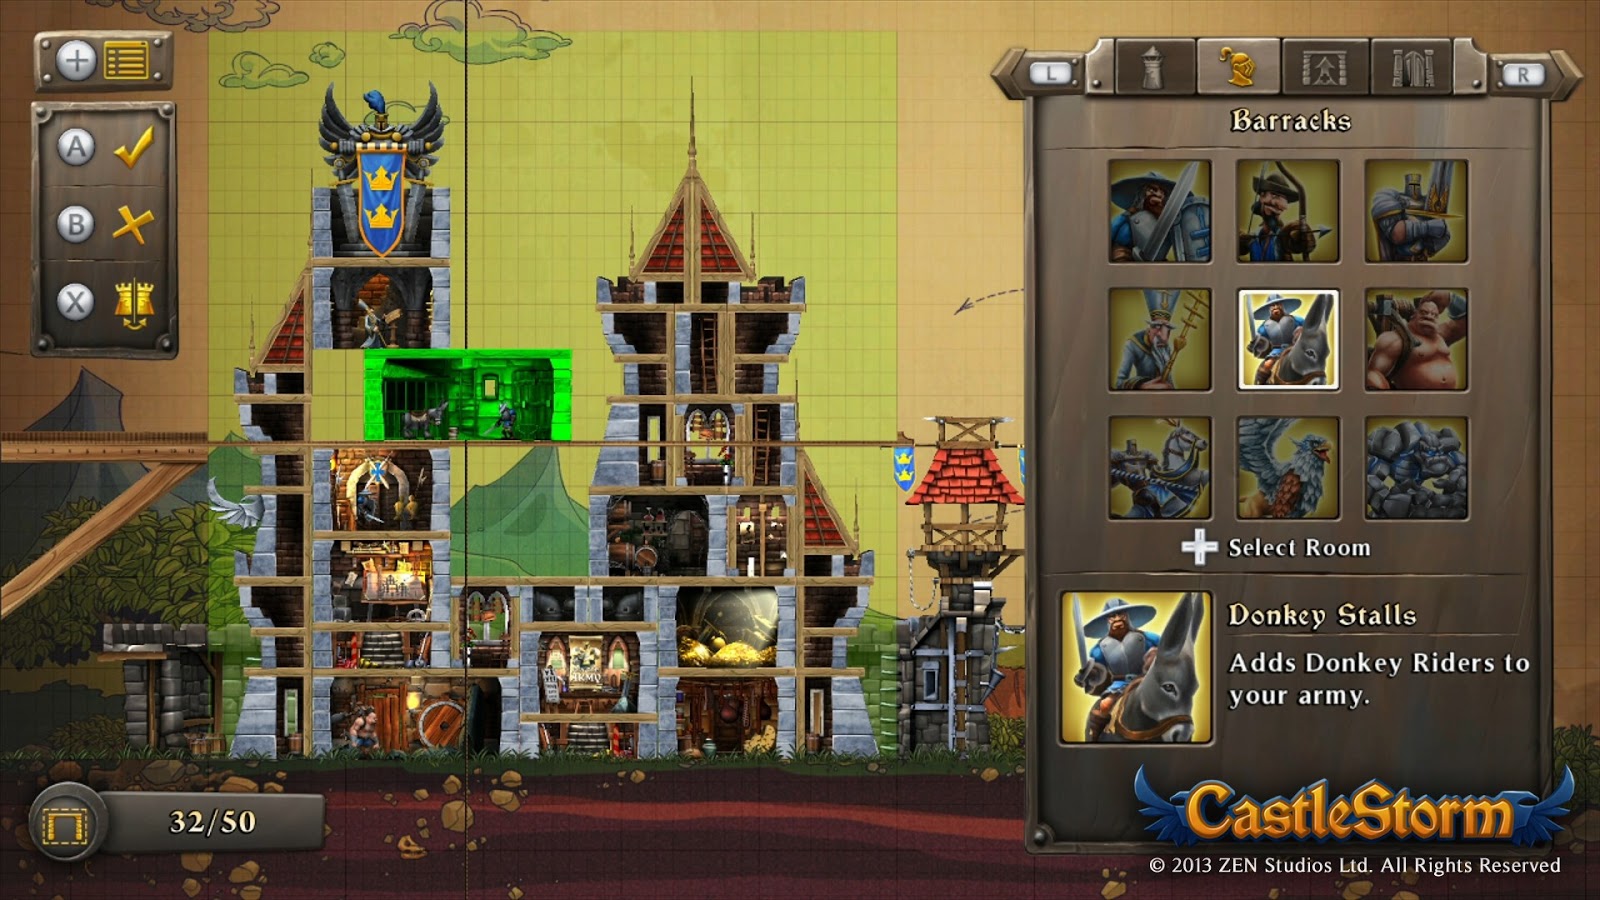 Revelada a data de lançamento e novas informações sobre o jogo CastleStorm CastleStorm_WiiU_screenshot_08